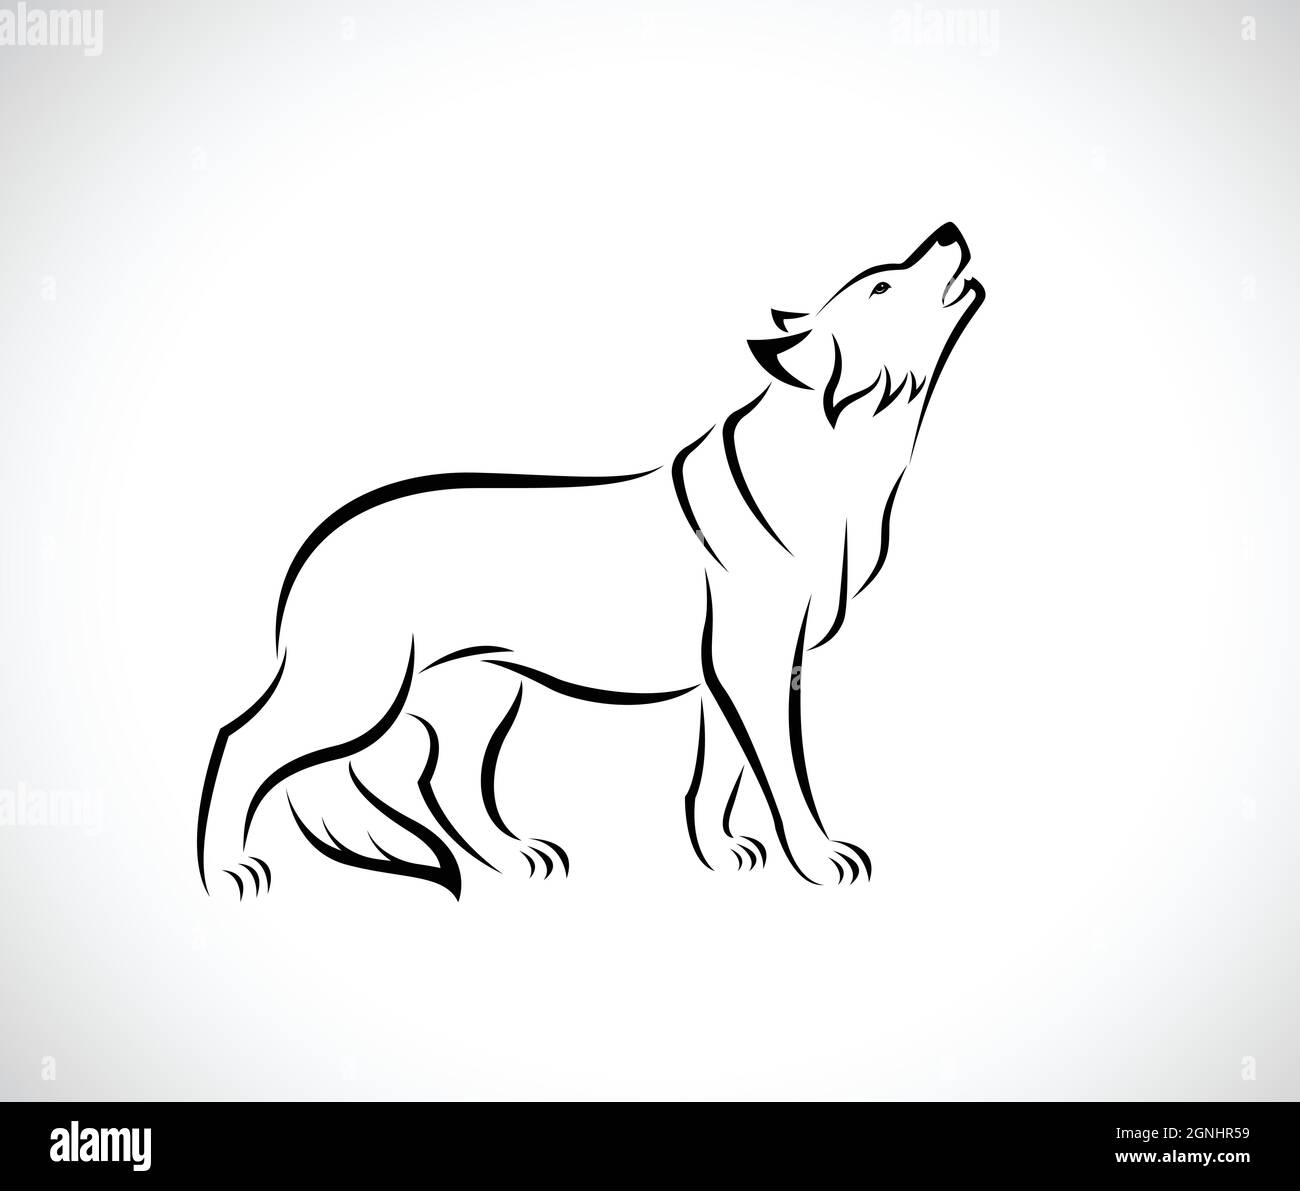 Vektor von Wolf-Design auf weißem Hintergrund. Leicht editierbare  Vektorgrafik mit Ebenen. Wilde Tiere Stock-Vektorgrafik - Alamy